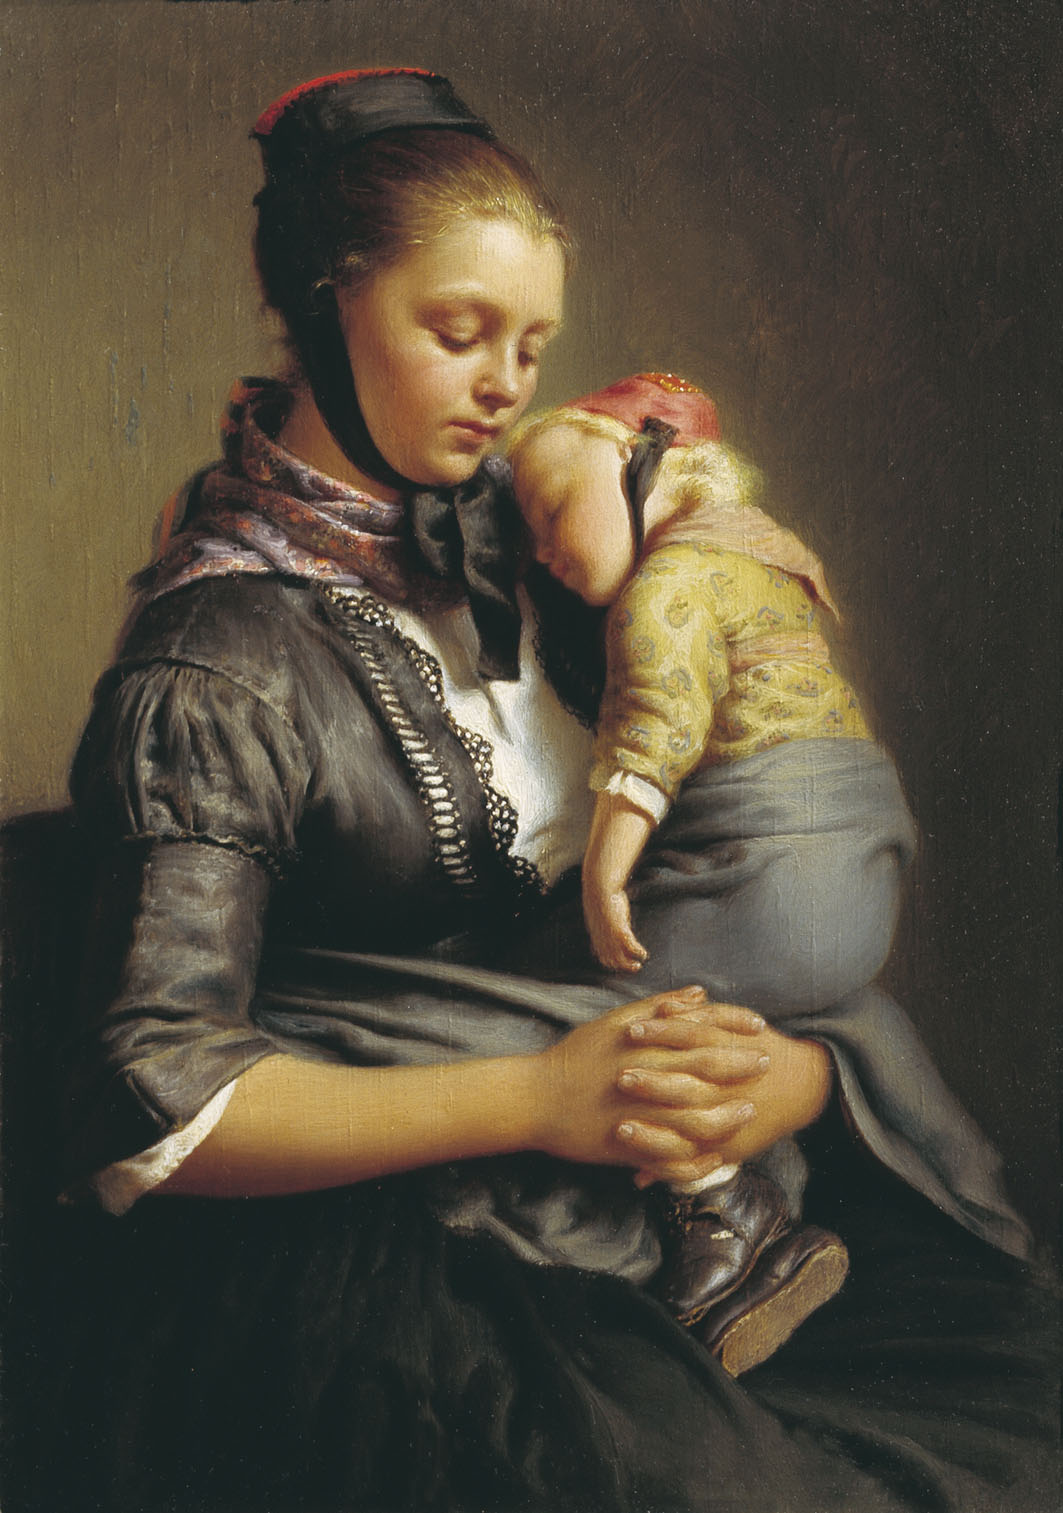 Евграф Рейтерн. Крестьянка из Вилленсхаузена с уснувшим ребёнком на руках. 1843.